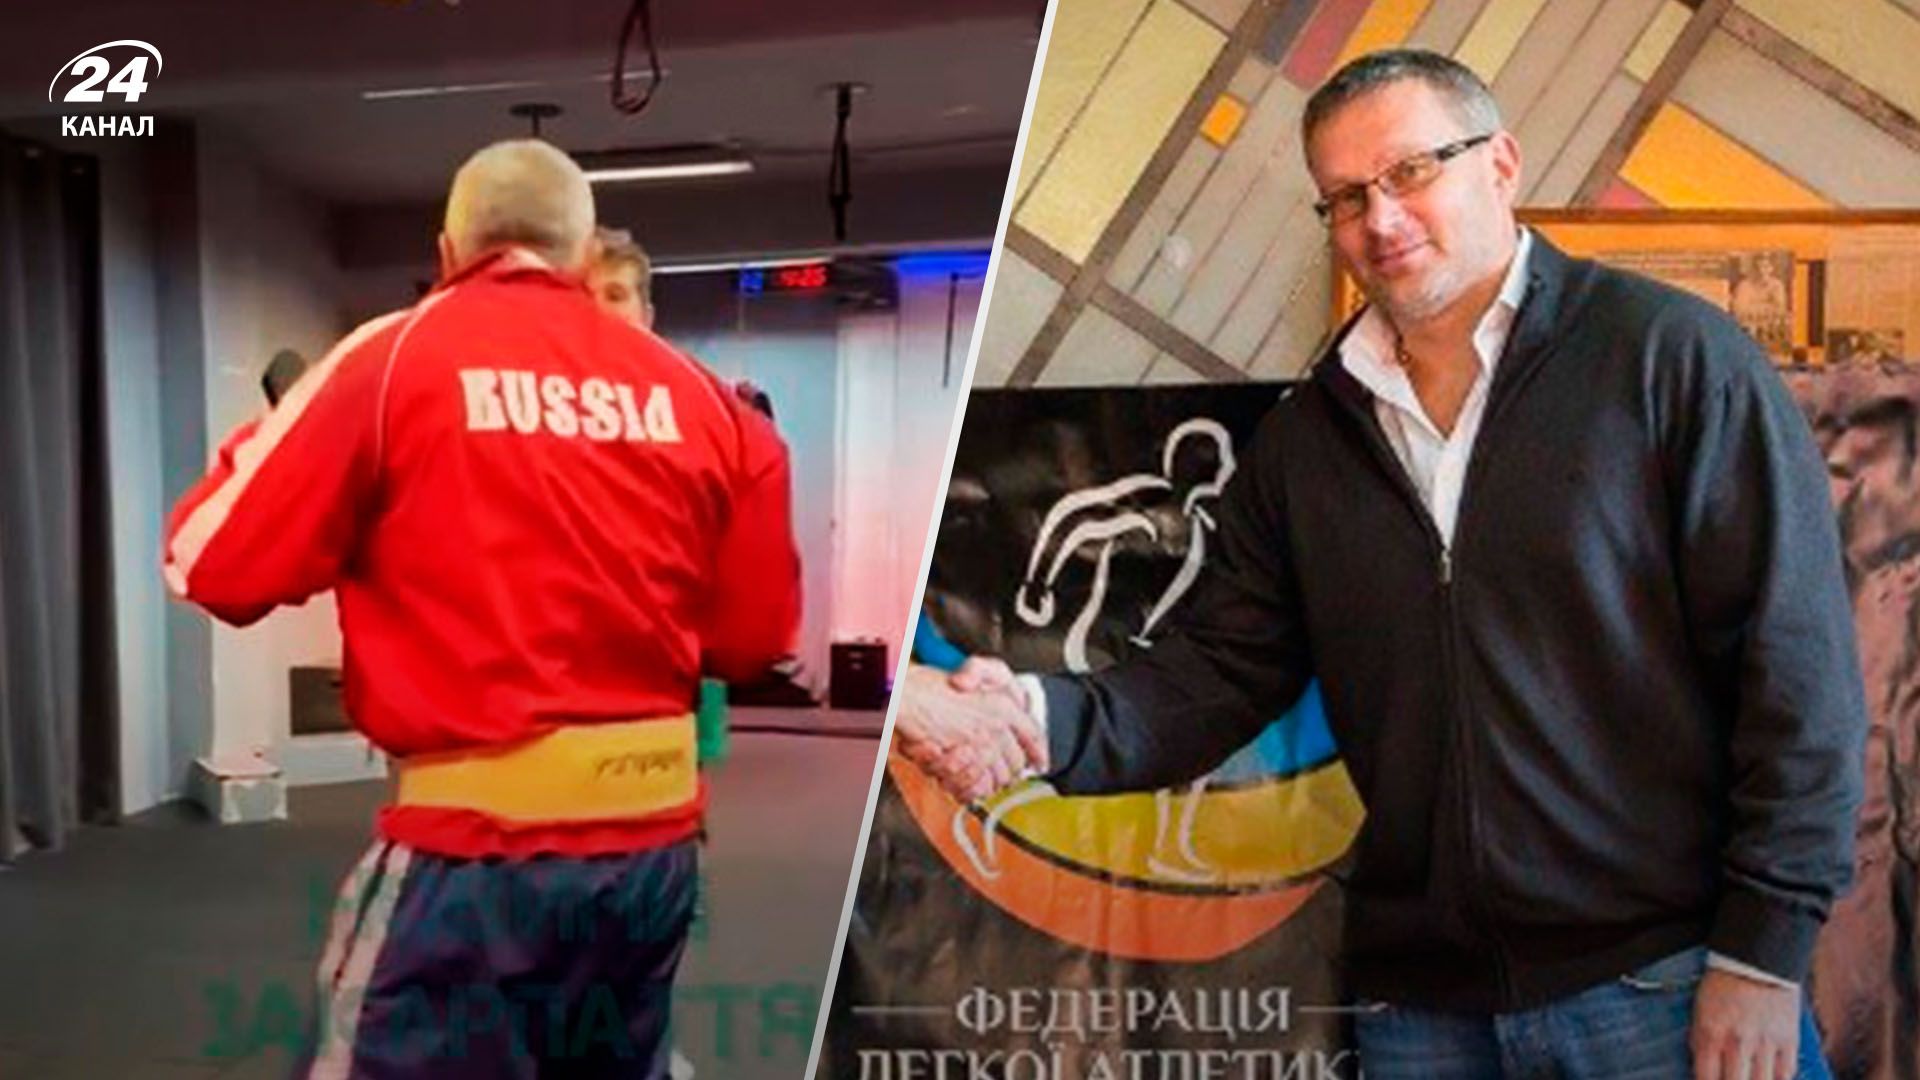 Скандал у спорті: чиновник із Закарпаття тренувався у формі з написом Росія